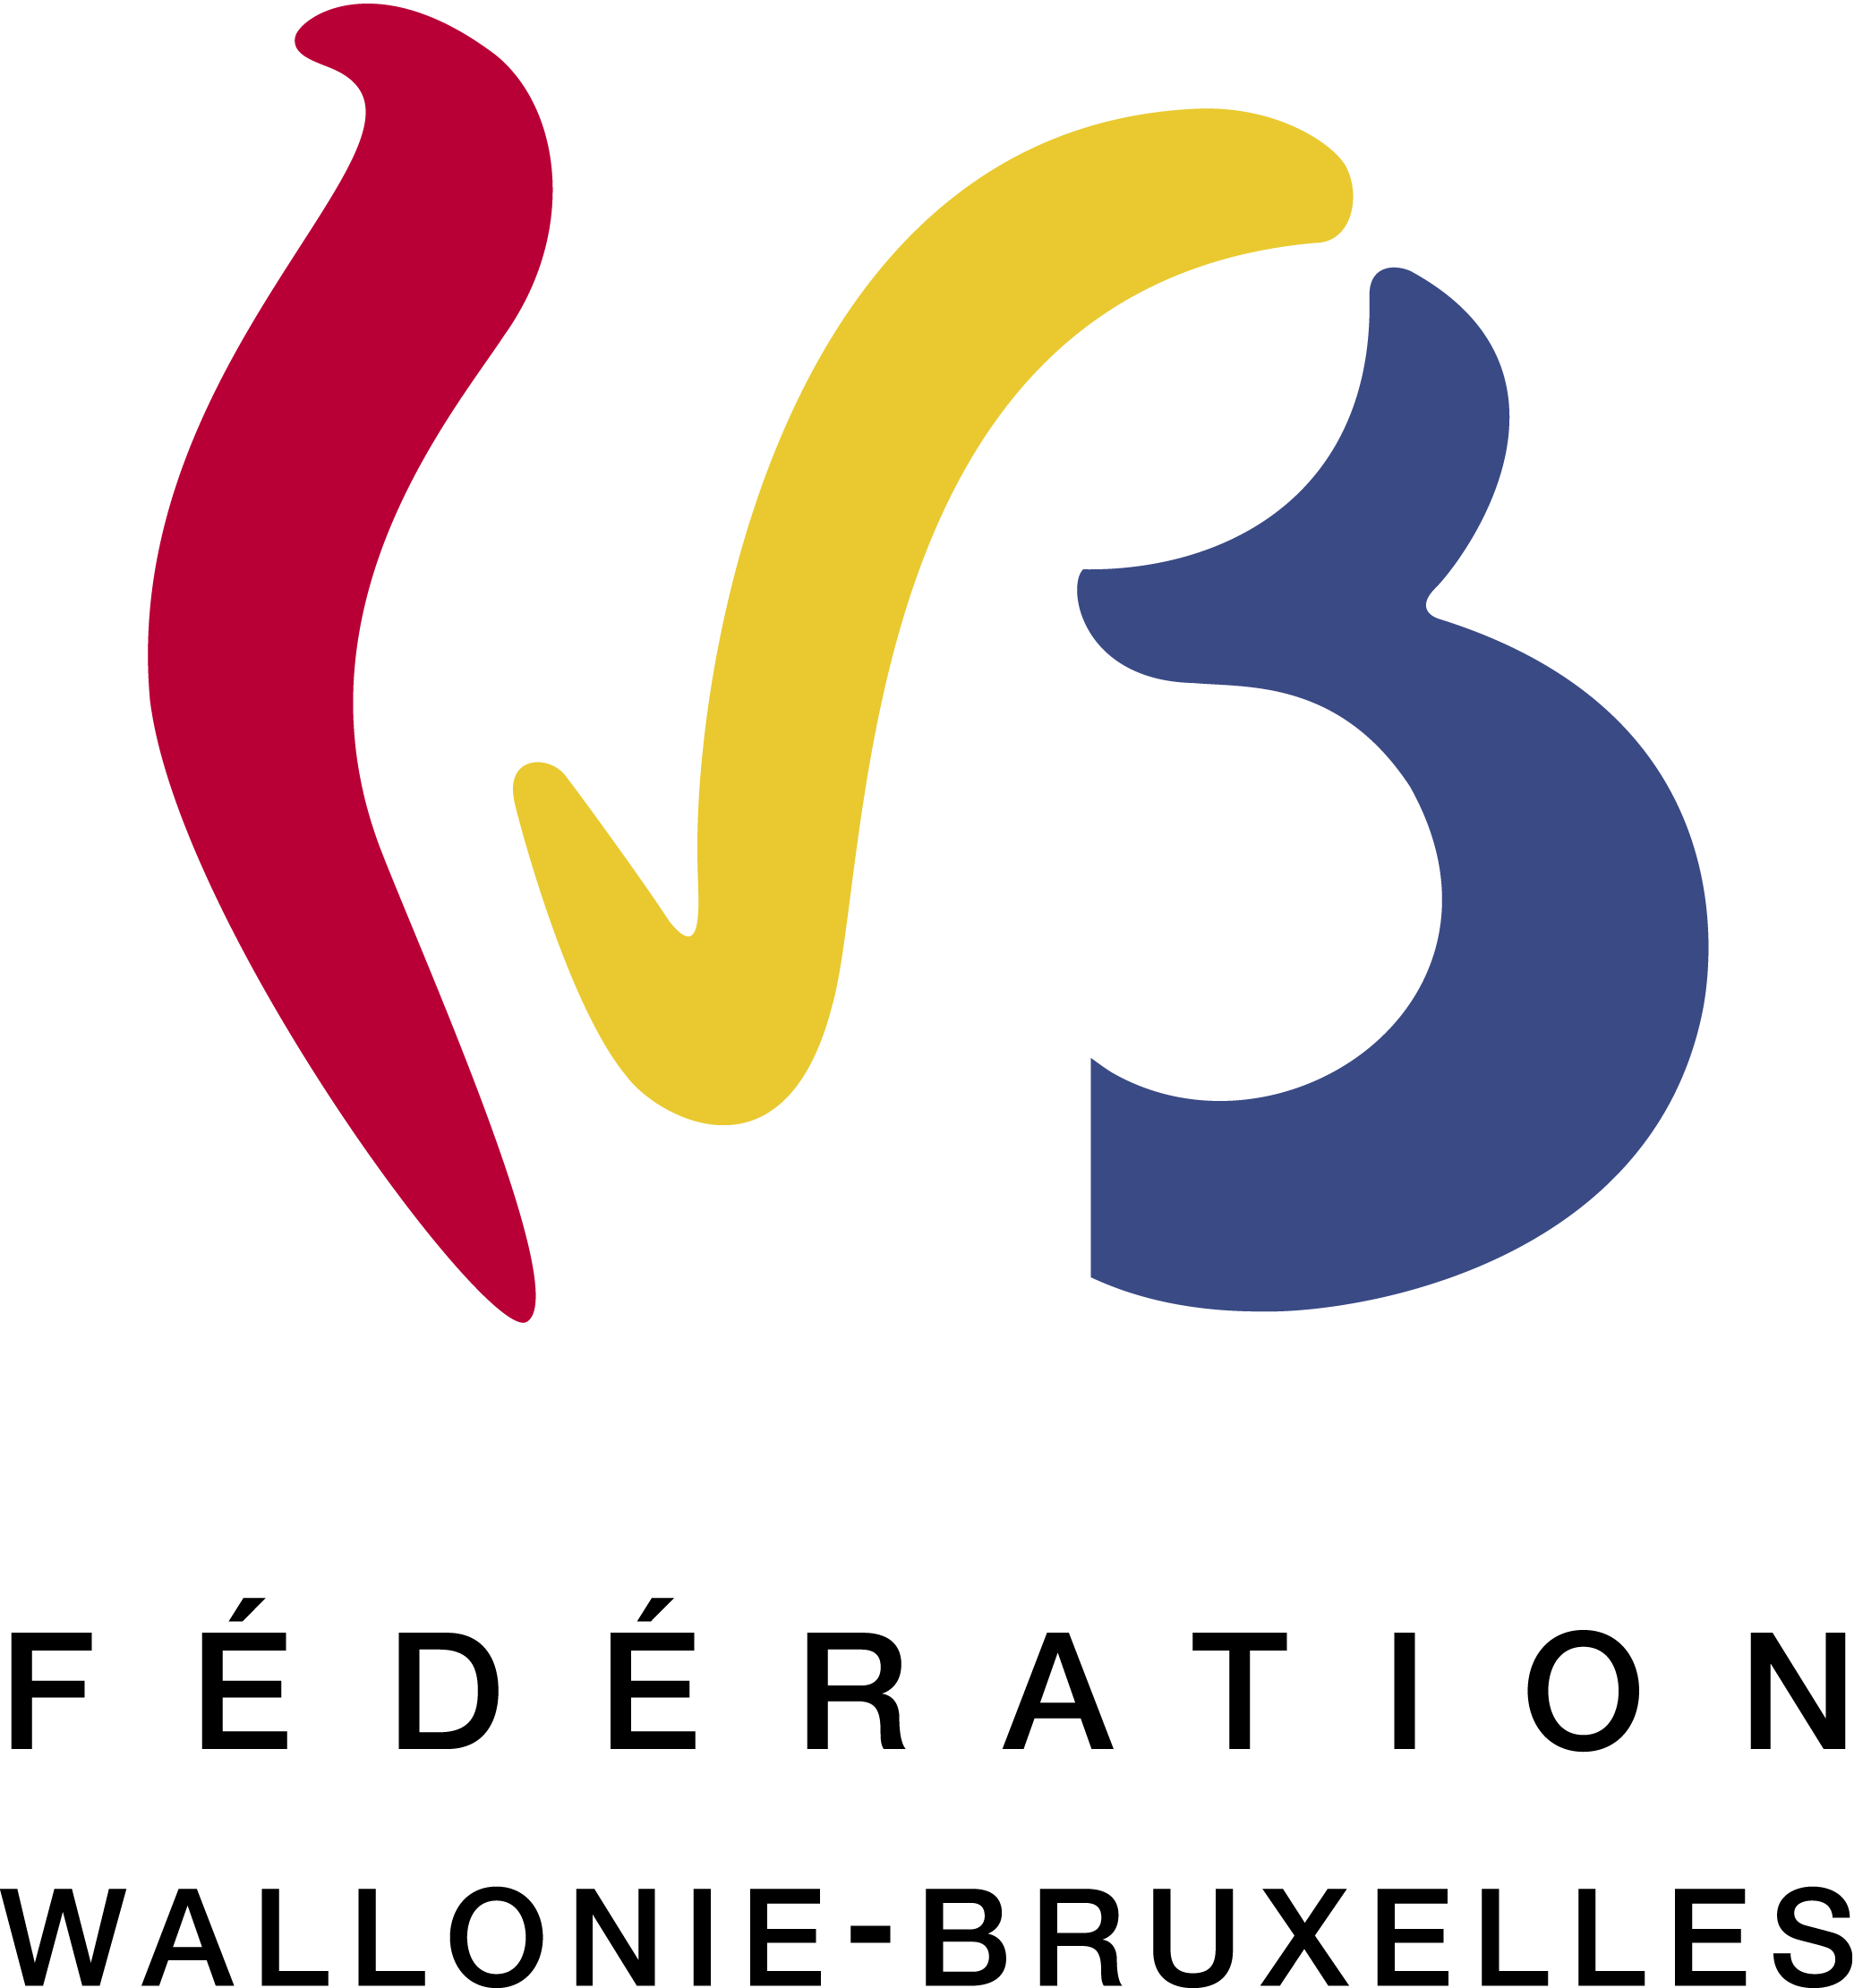 Fédération Wallonie Bruxelles